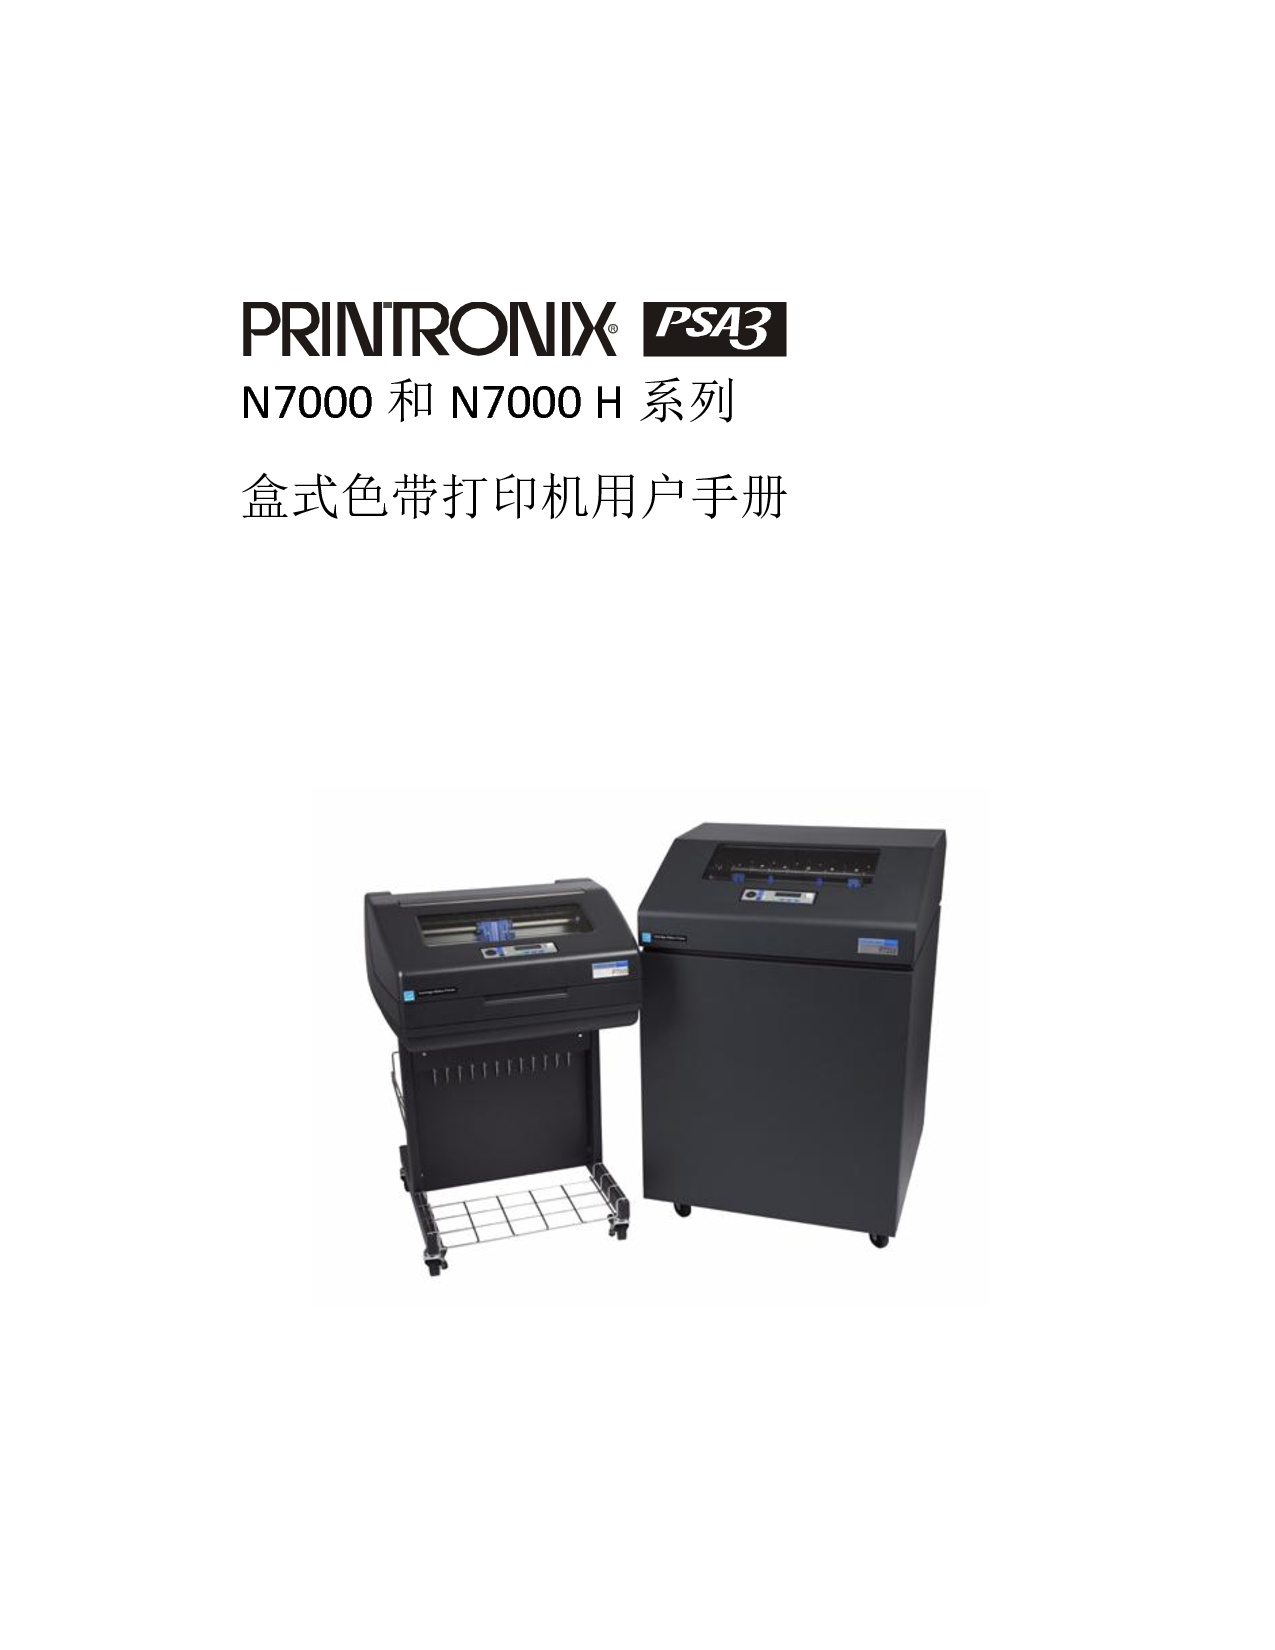 普印力 Printronix PSA3 N7000 用户手册 封面